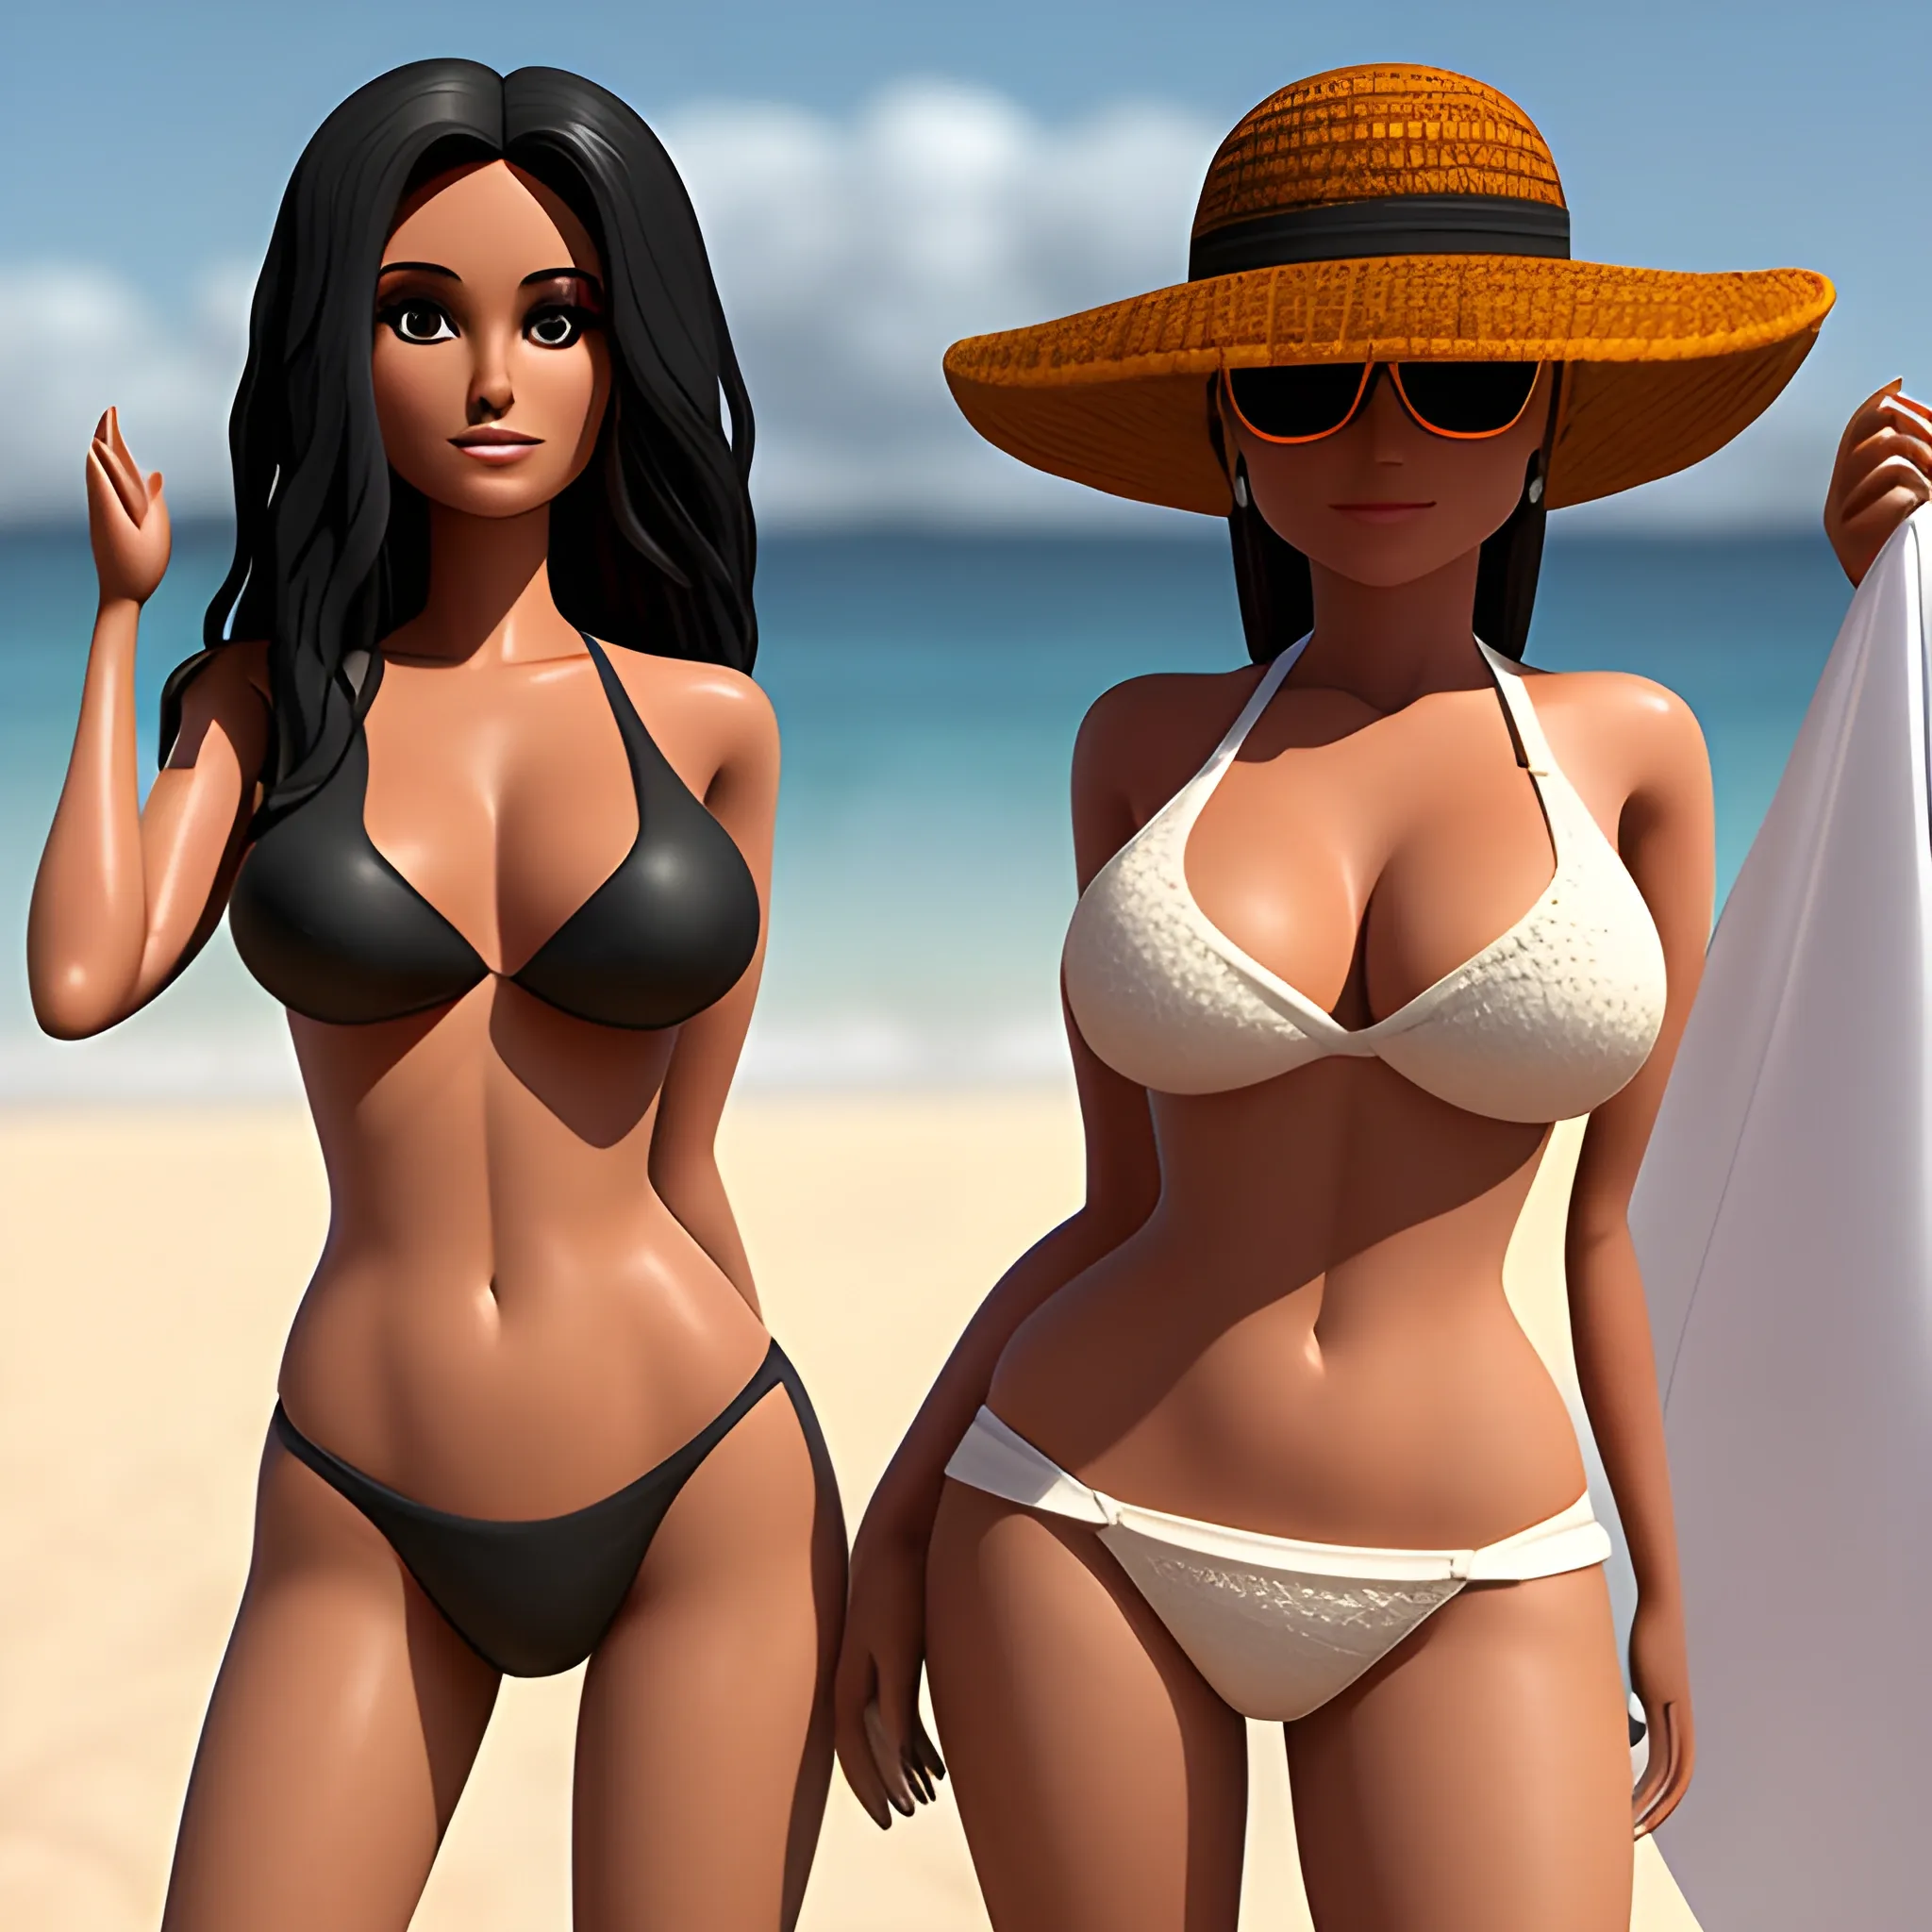 una mujer realista con miel morena, con una figura, 90,60,90, con ropa corta. mujer natural en una playa, 3D